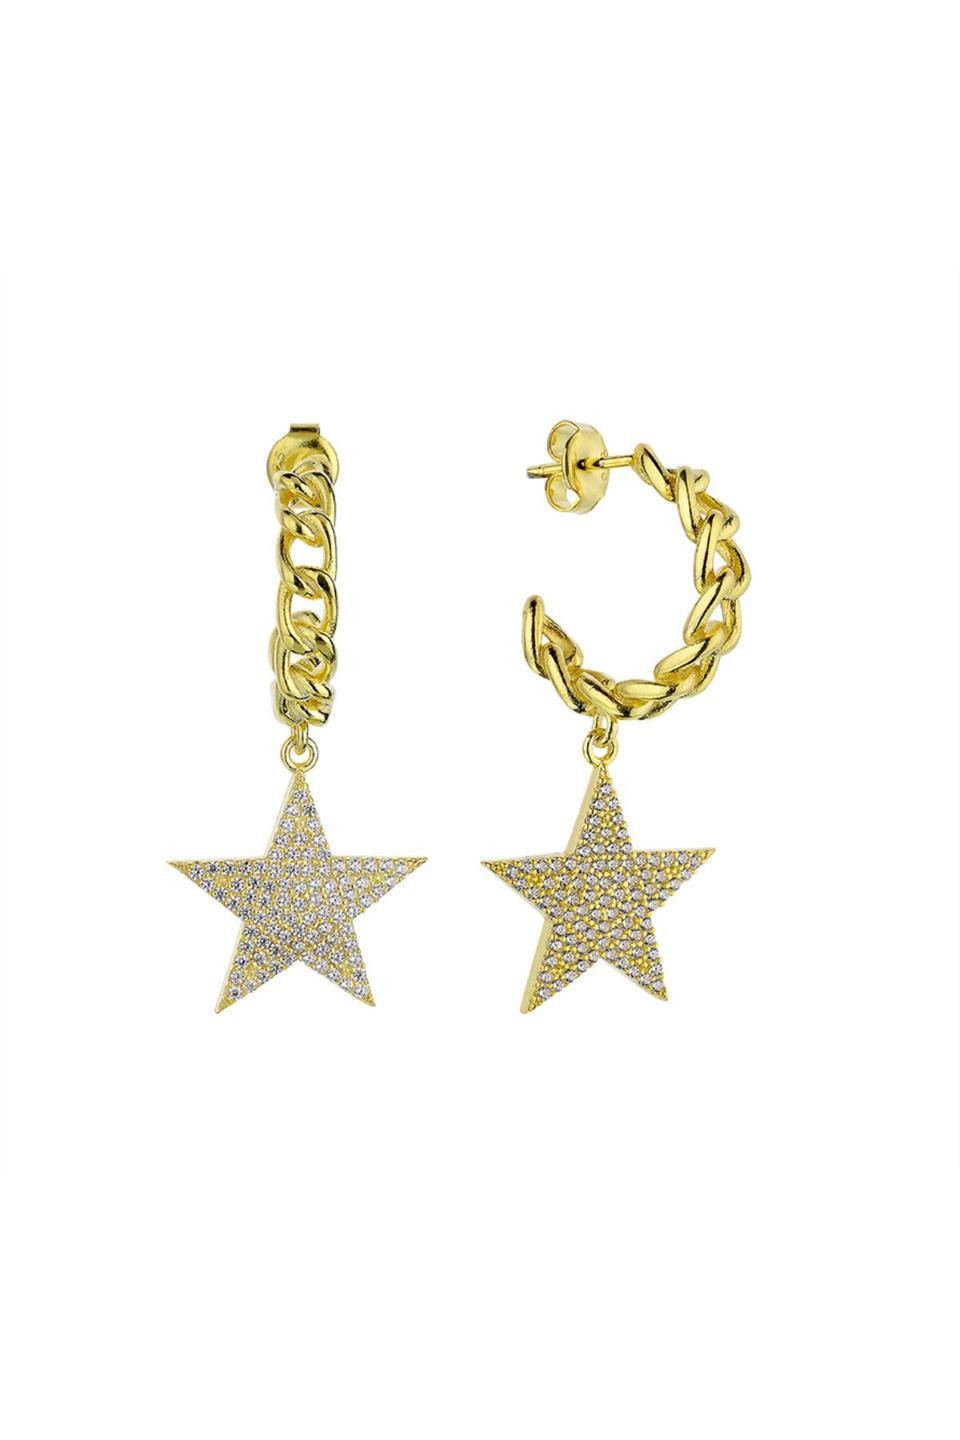 Make a Wish Star Earrings